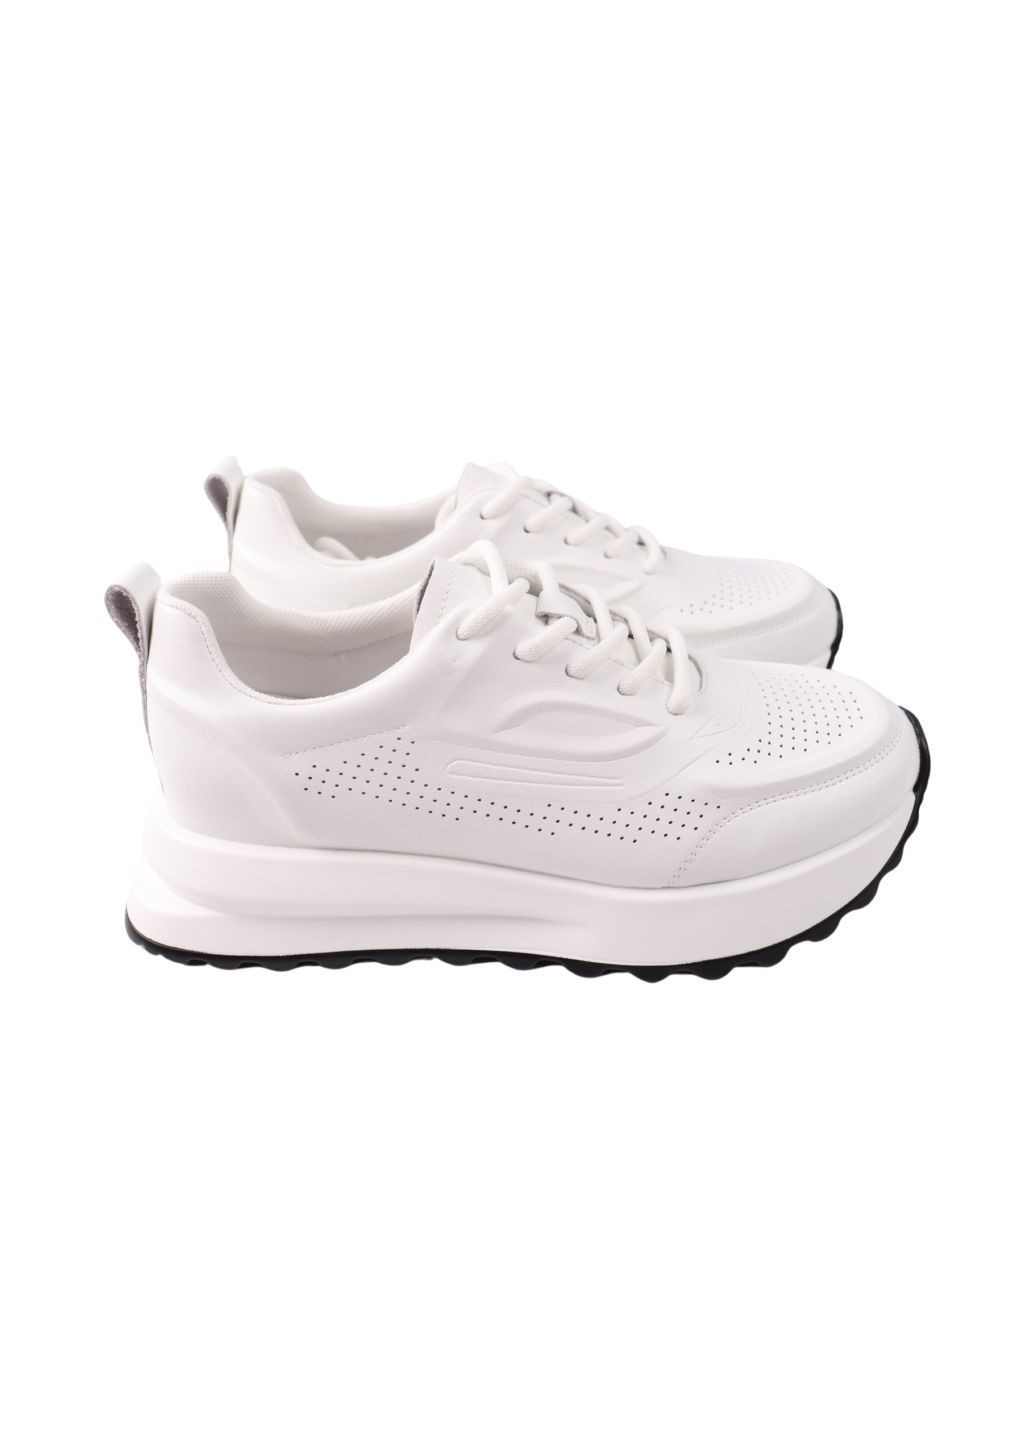 Білі кросівки жіночі білі натуральна шкіра FARINNI 550-24DTS